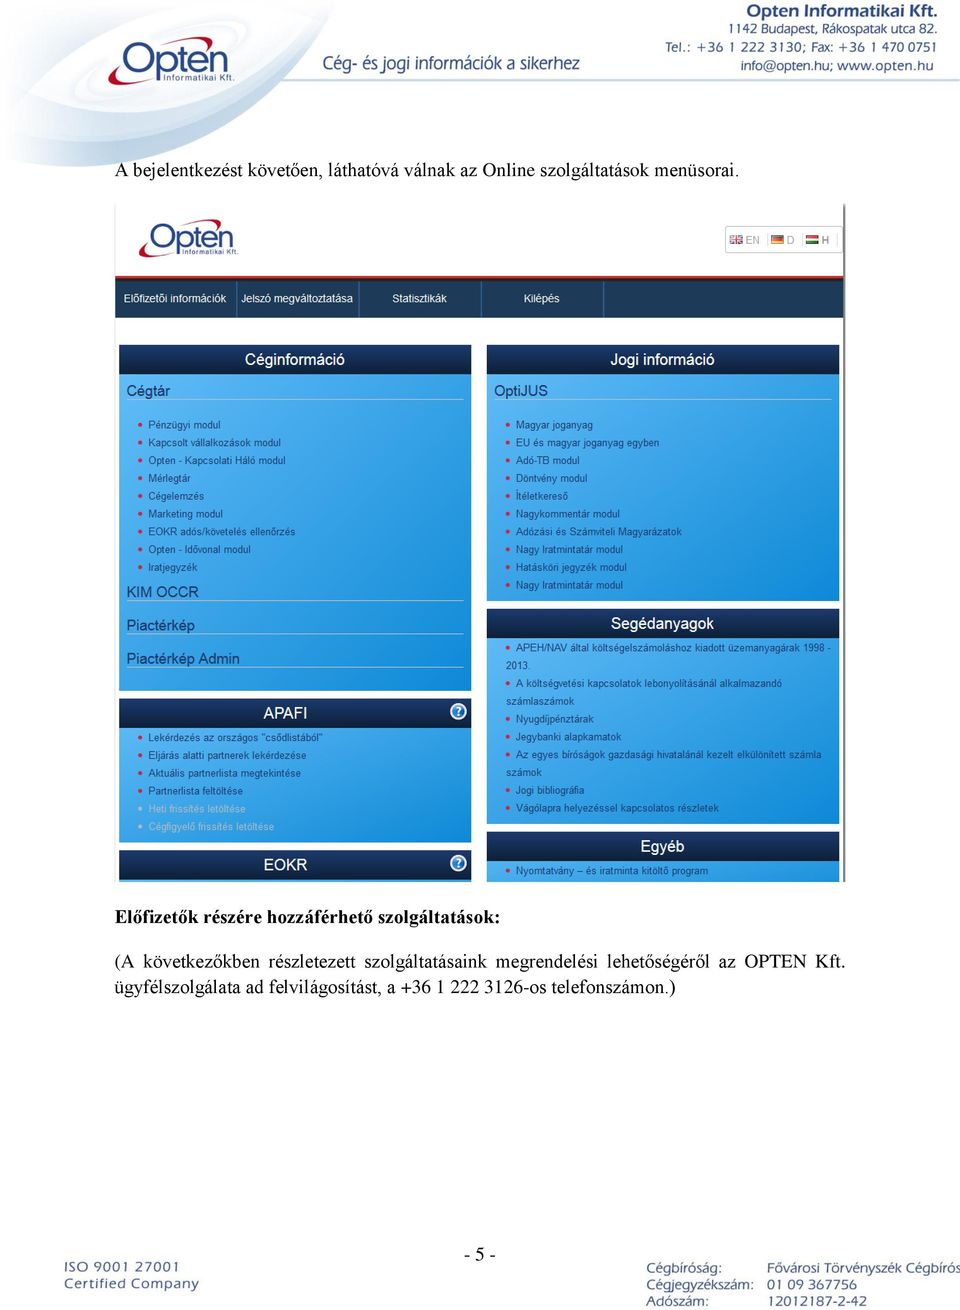 OPTEN Online használati útmutató - PDF Ingyenes letöltés